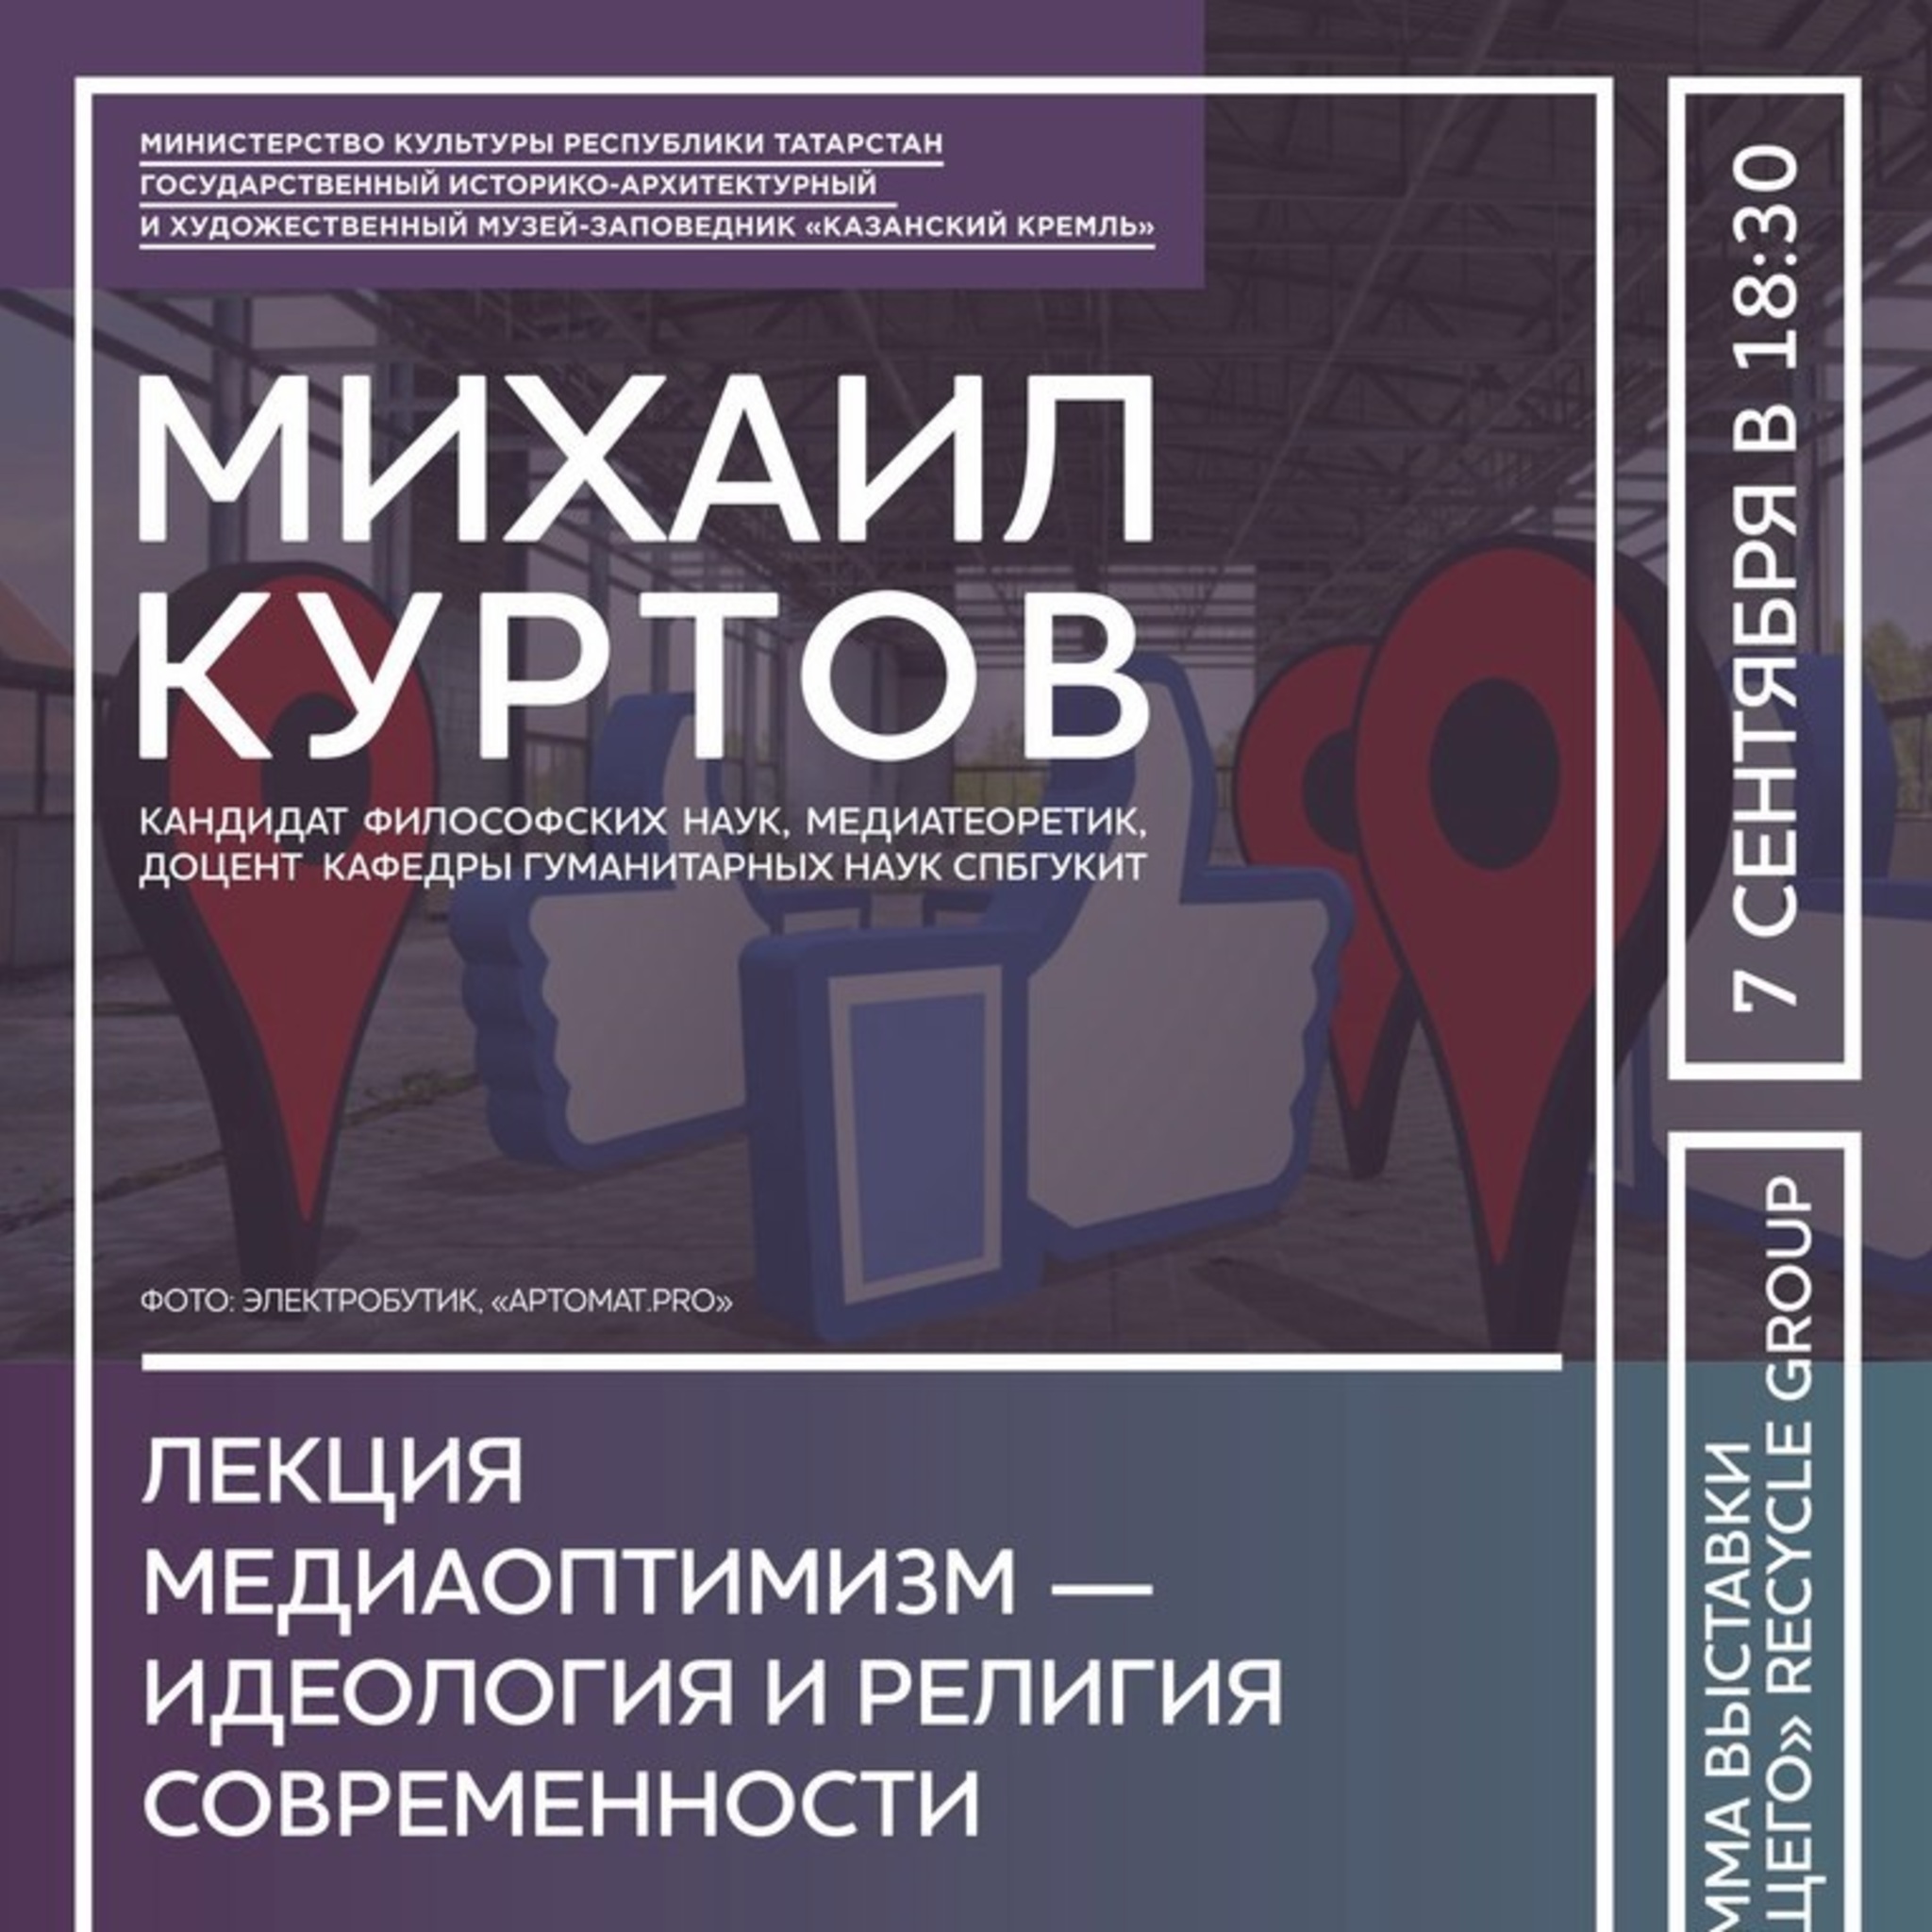 Lecture Mikhail Kotov